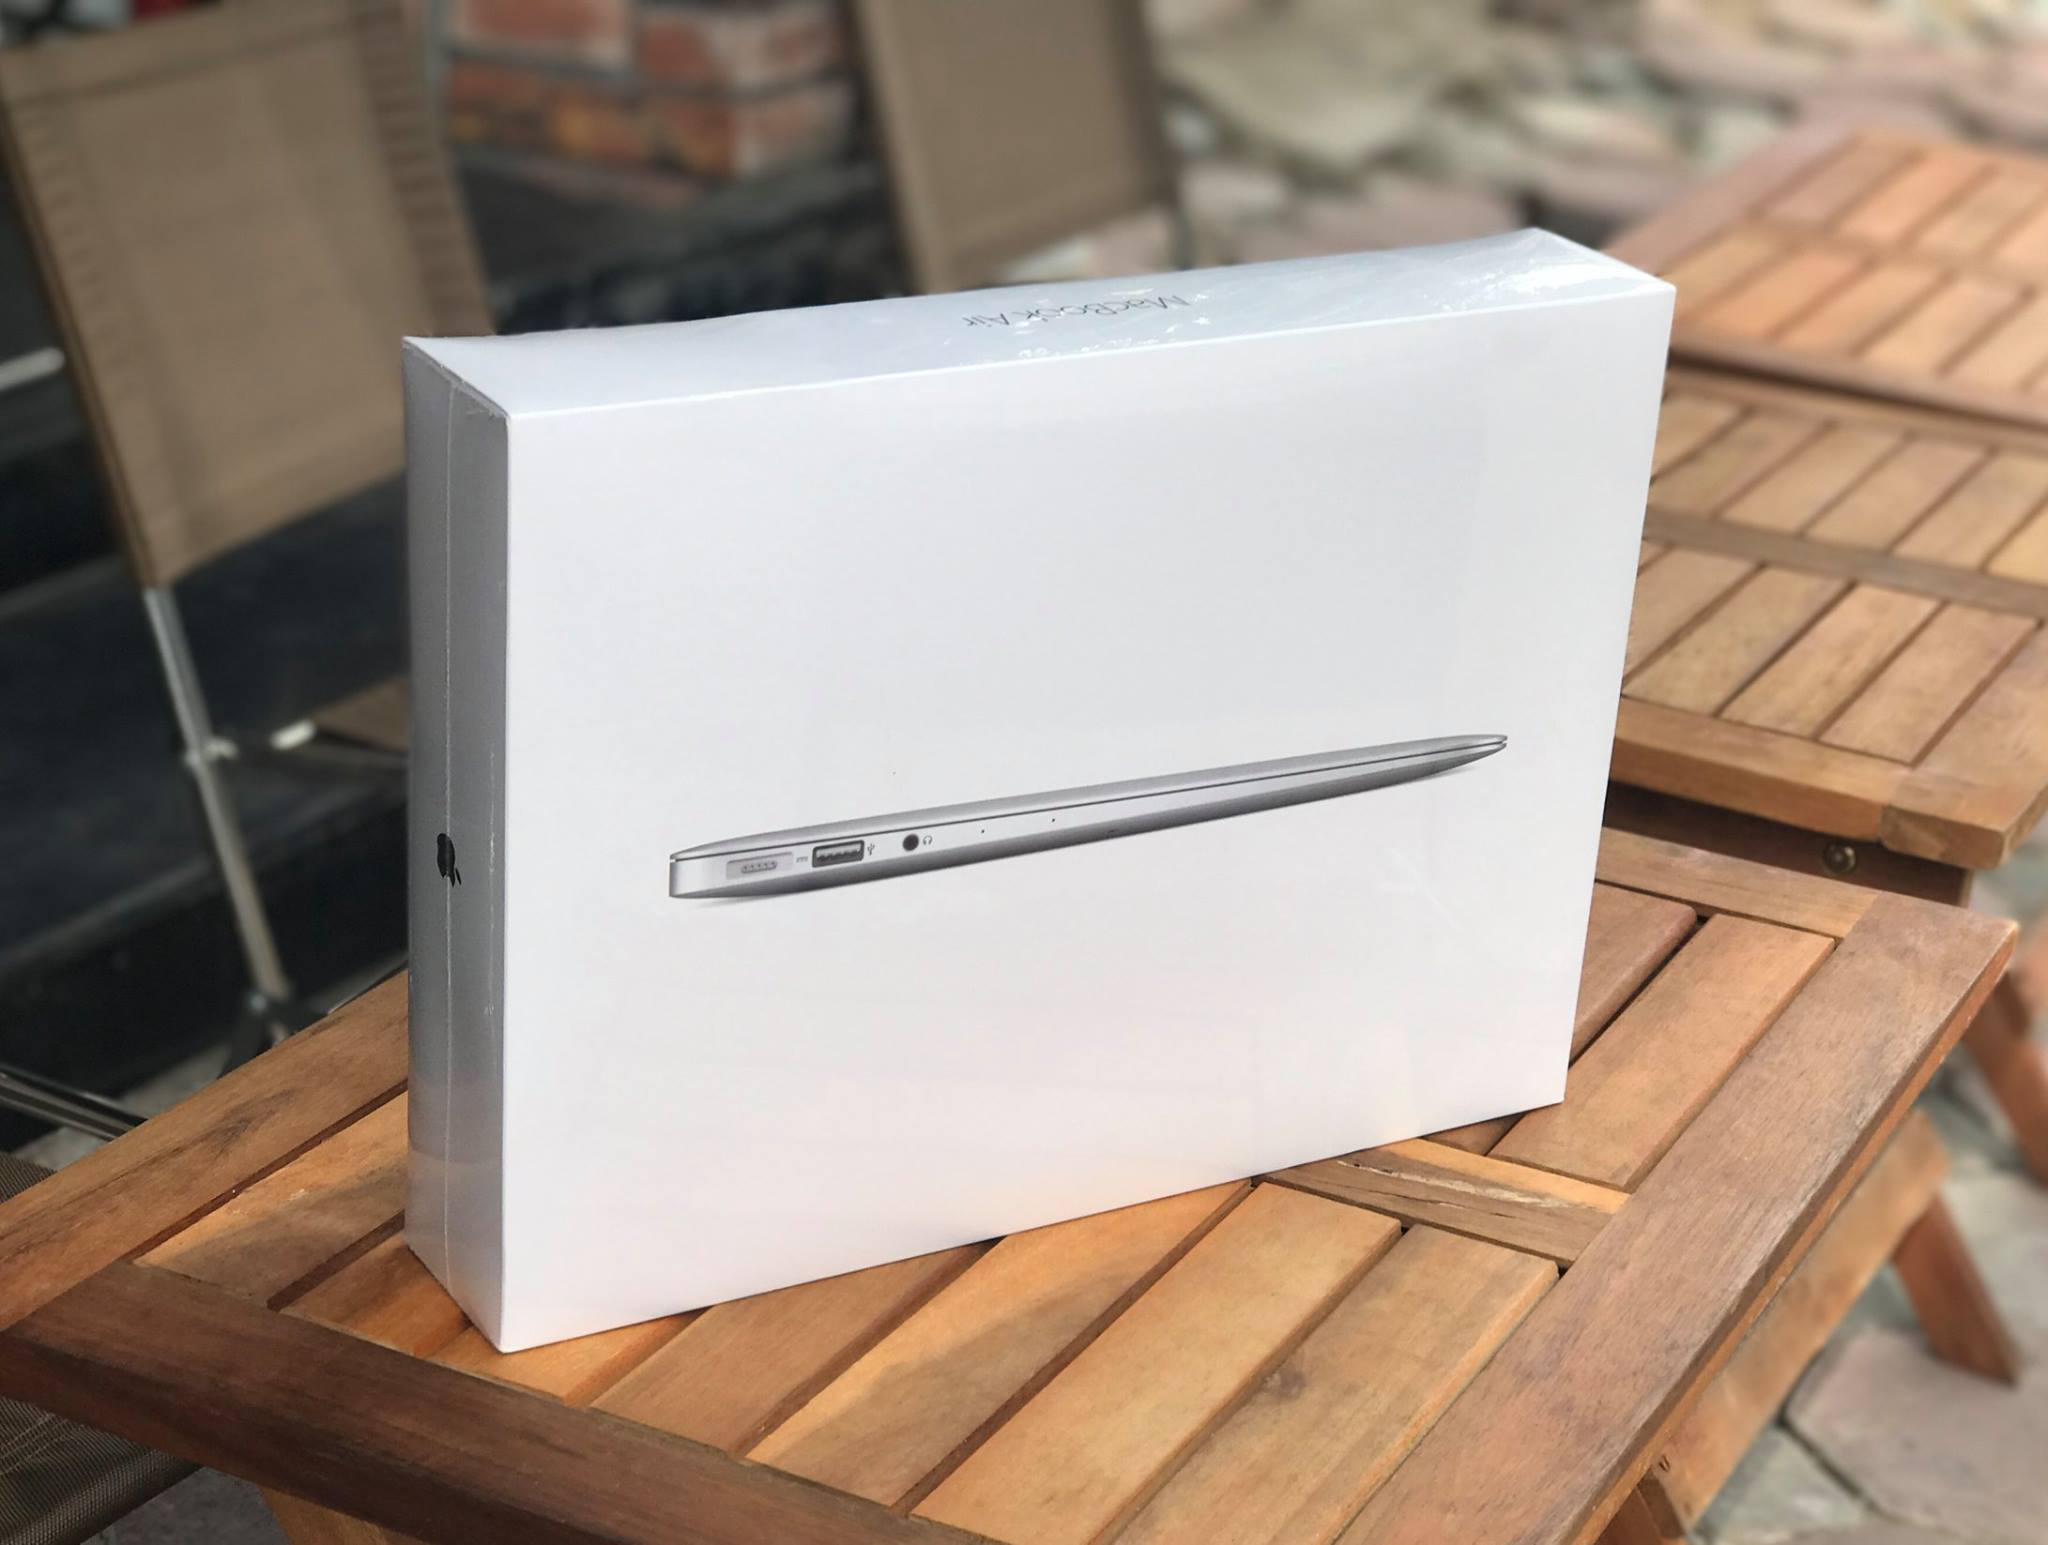 Macbook Air 13-inch MQD42